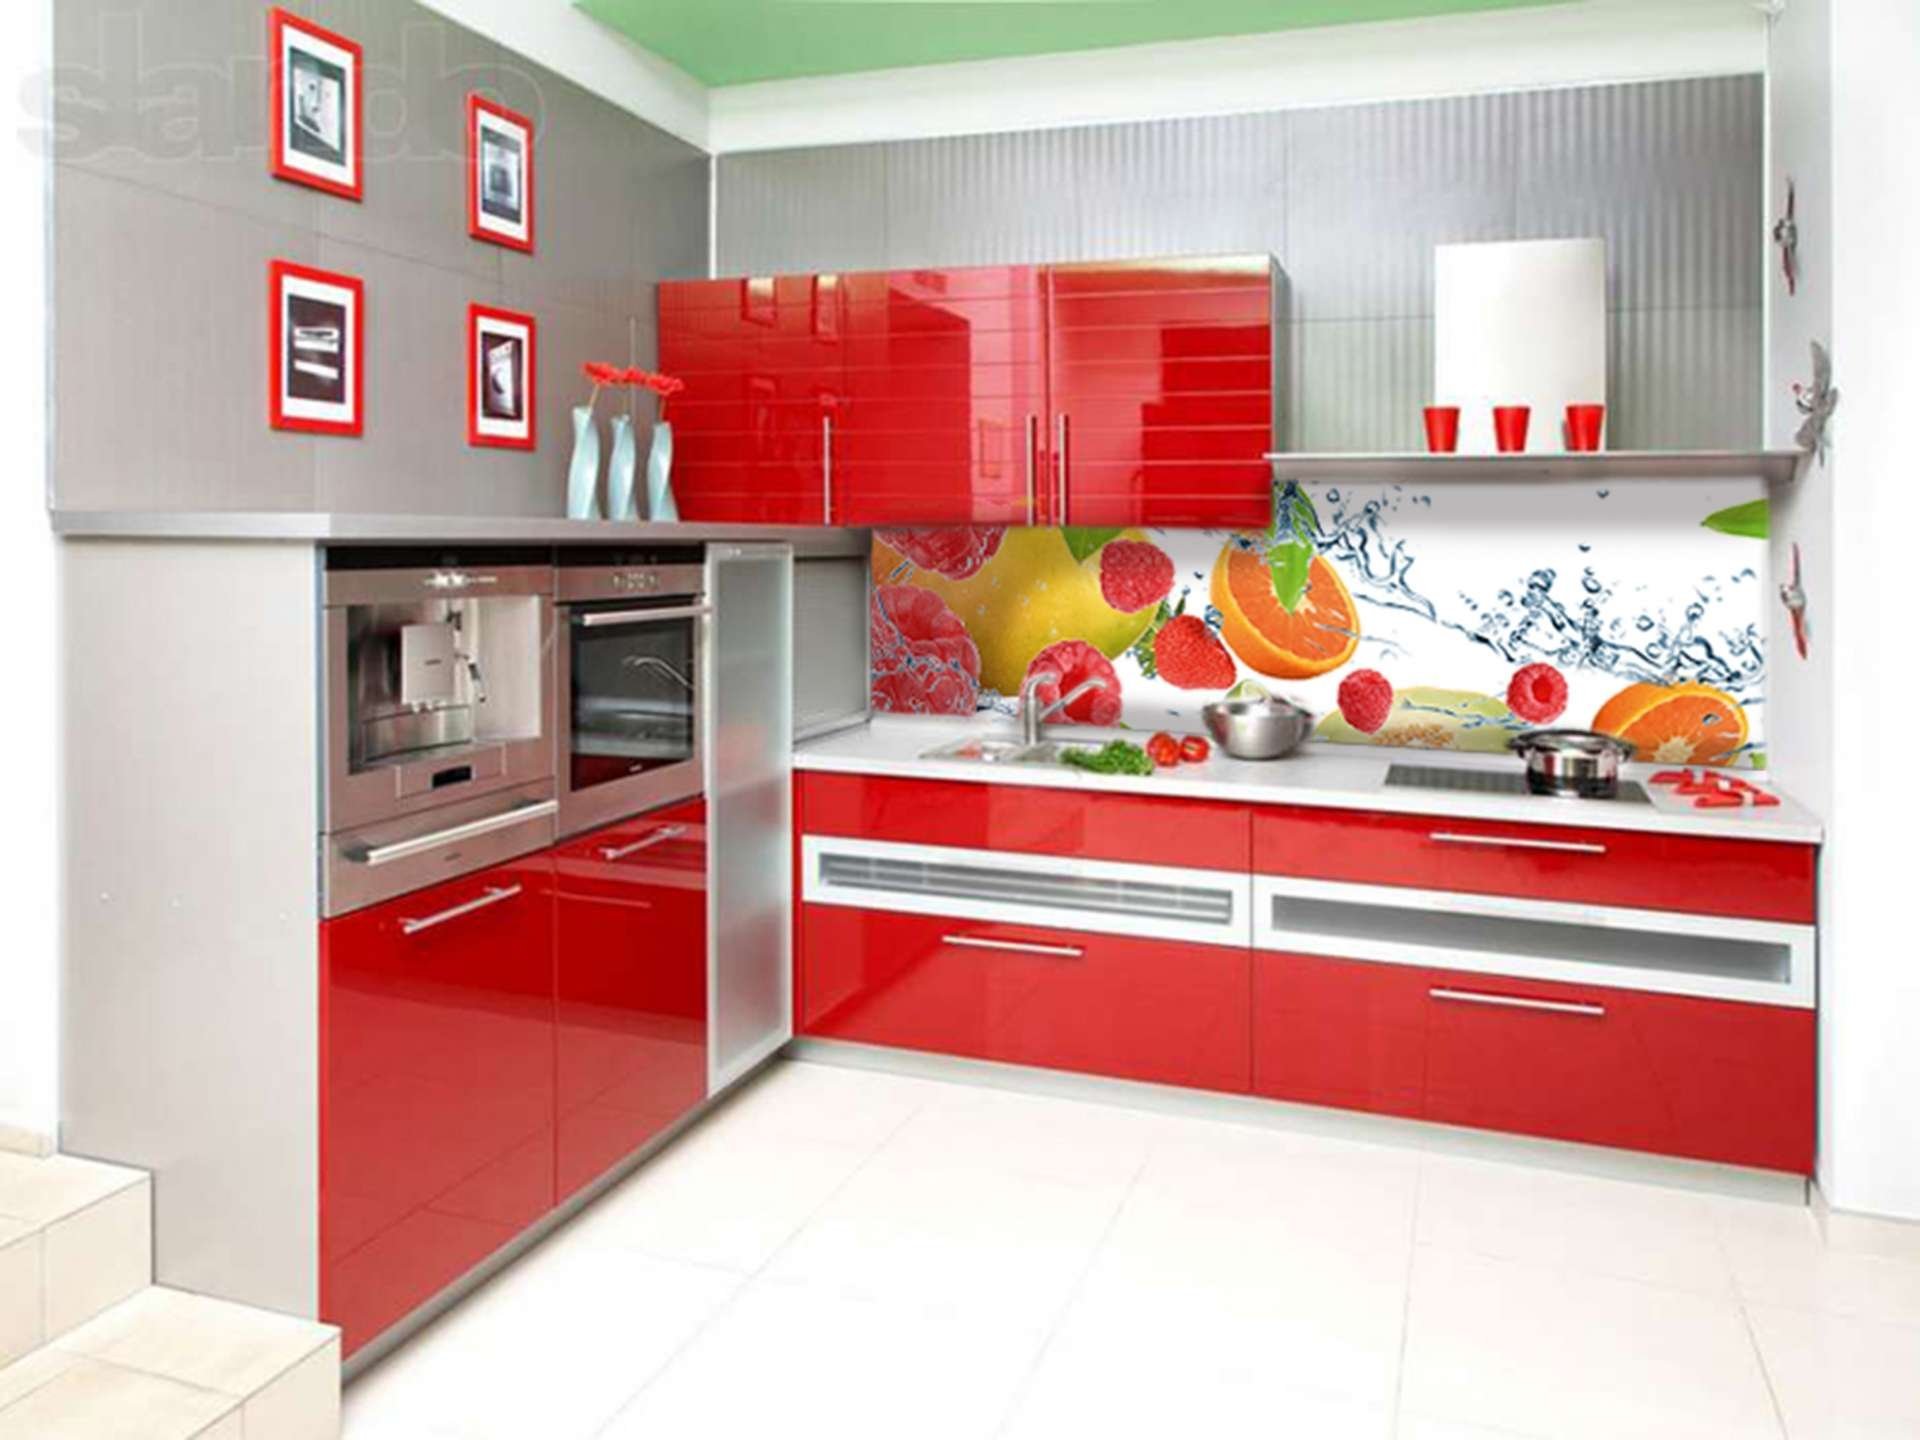 Ната кухни. Красно белая кухня. Кухонный гарнитур красный с белым. Фартук для красной кухни. Красные кухни.